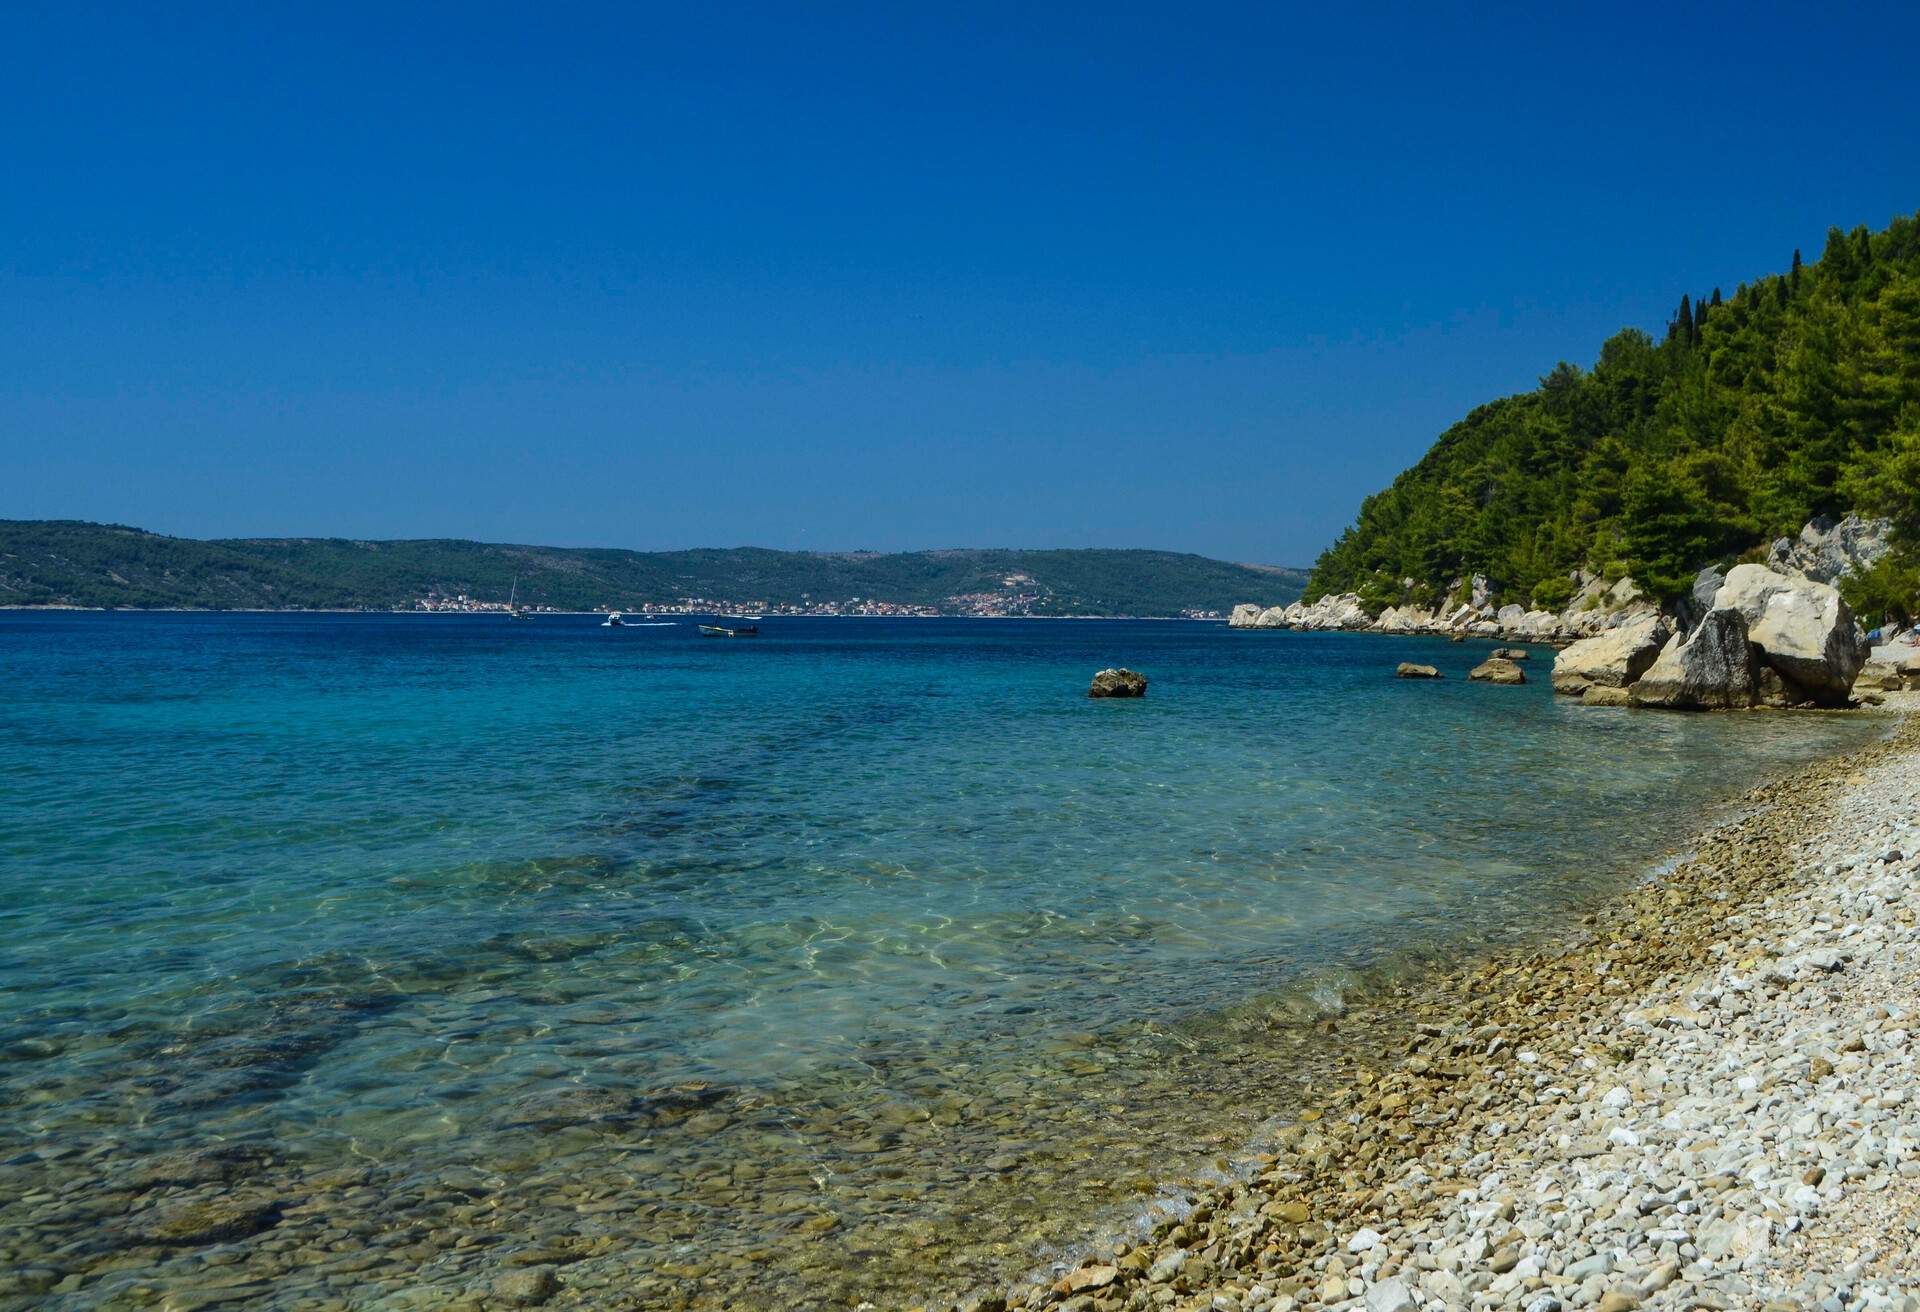 Croatian paradise beach